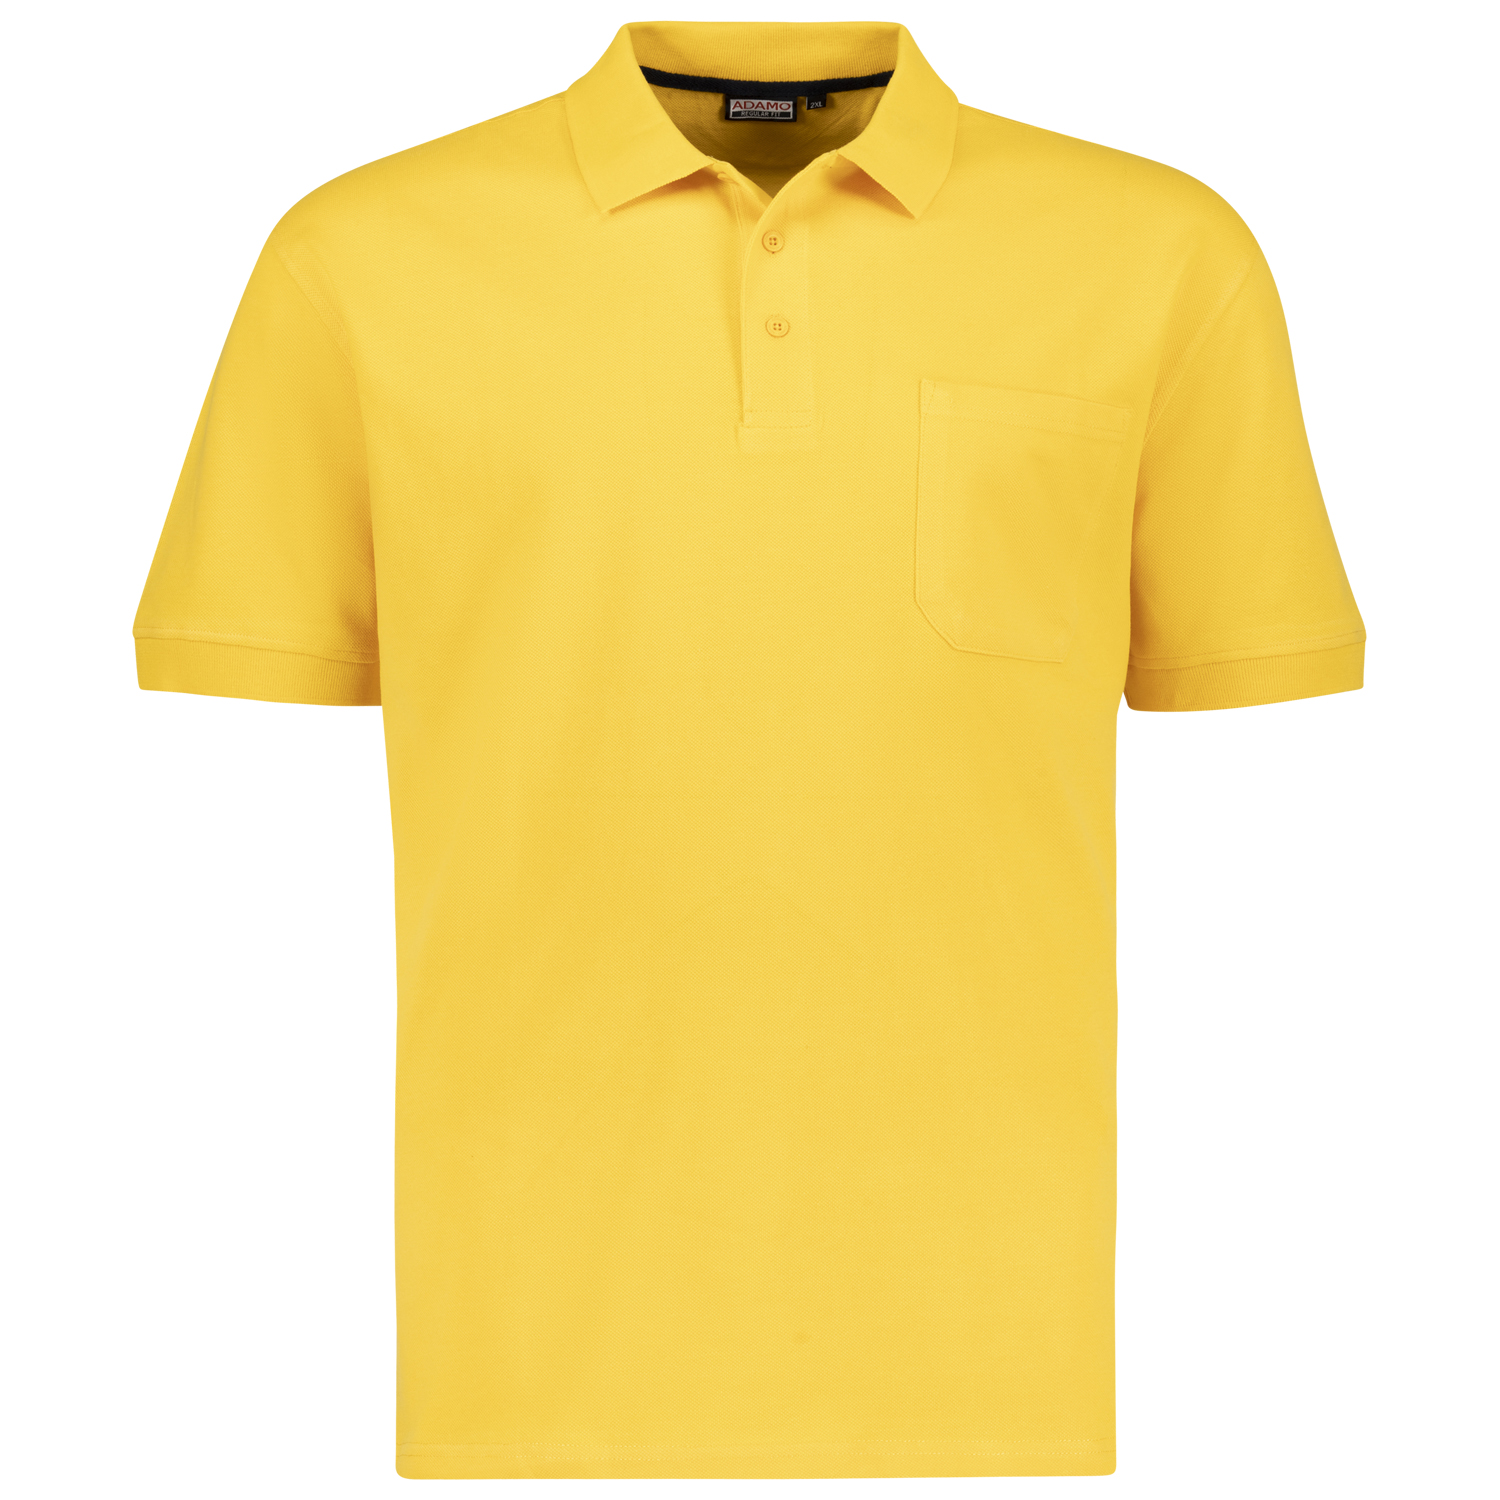 ADAMO Herren Pique Polohemd kurzärmlig Modell KENO in gelb bis Übergröße 10XL Regular Fit